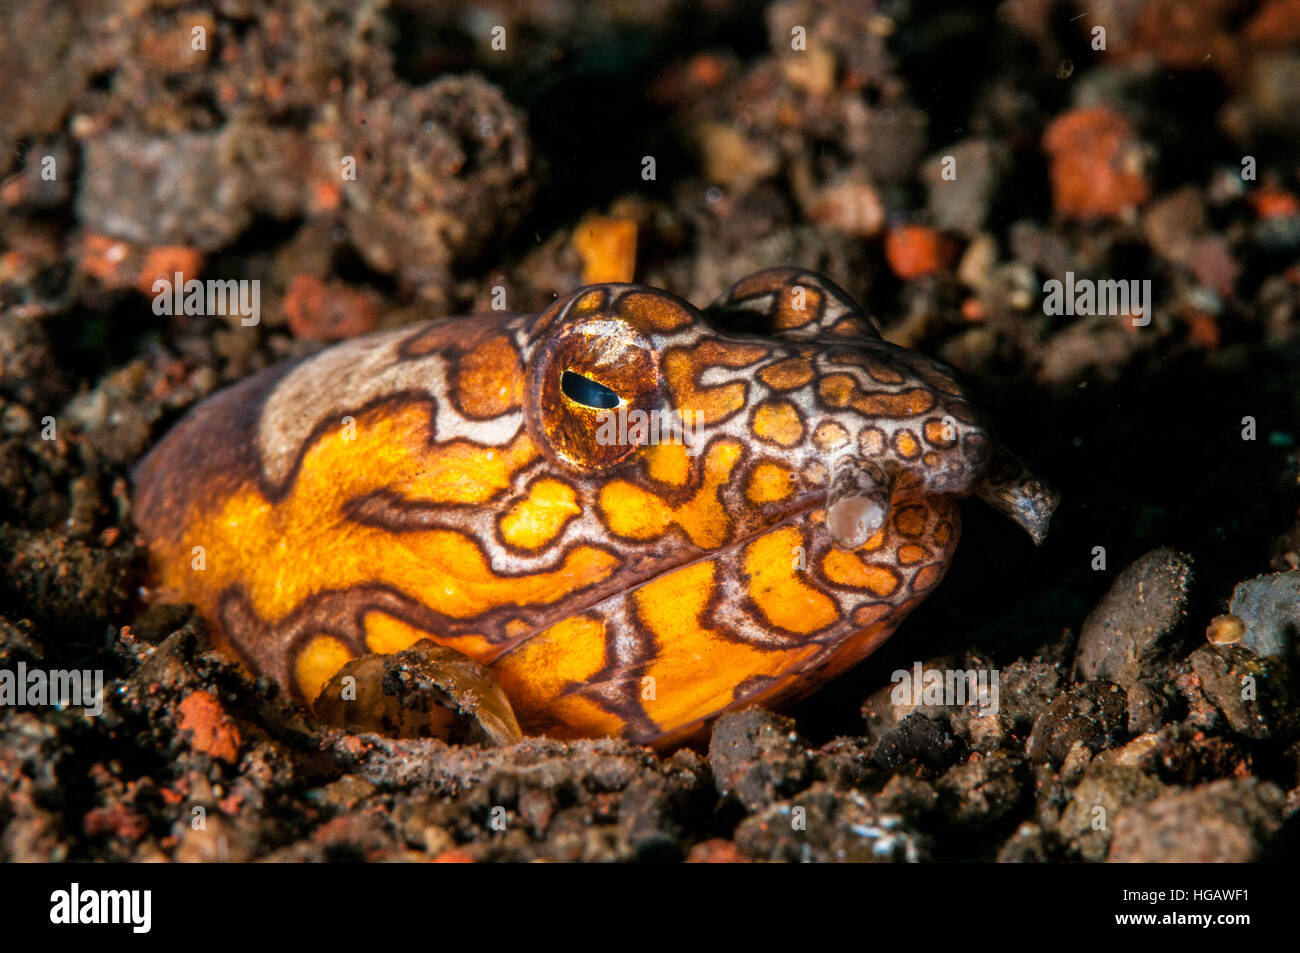 Napoleon snake eel (Ophichthus bonaparti), Bali, Indonesia Stock Photo